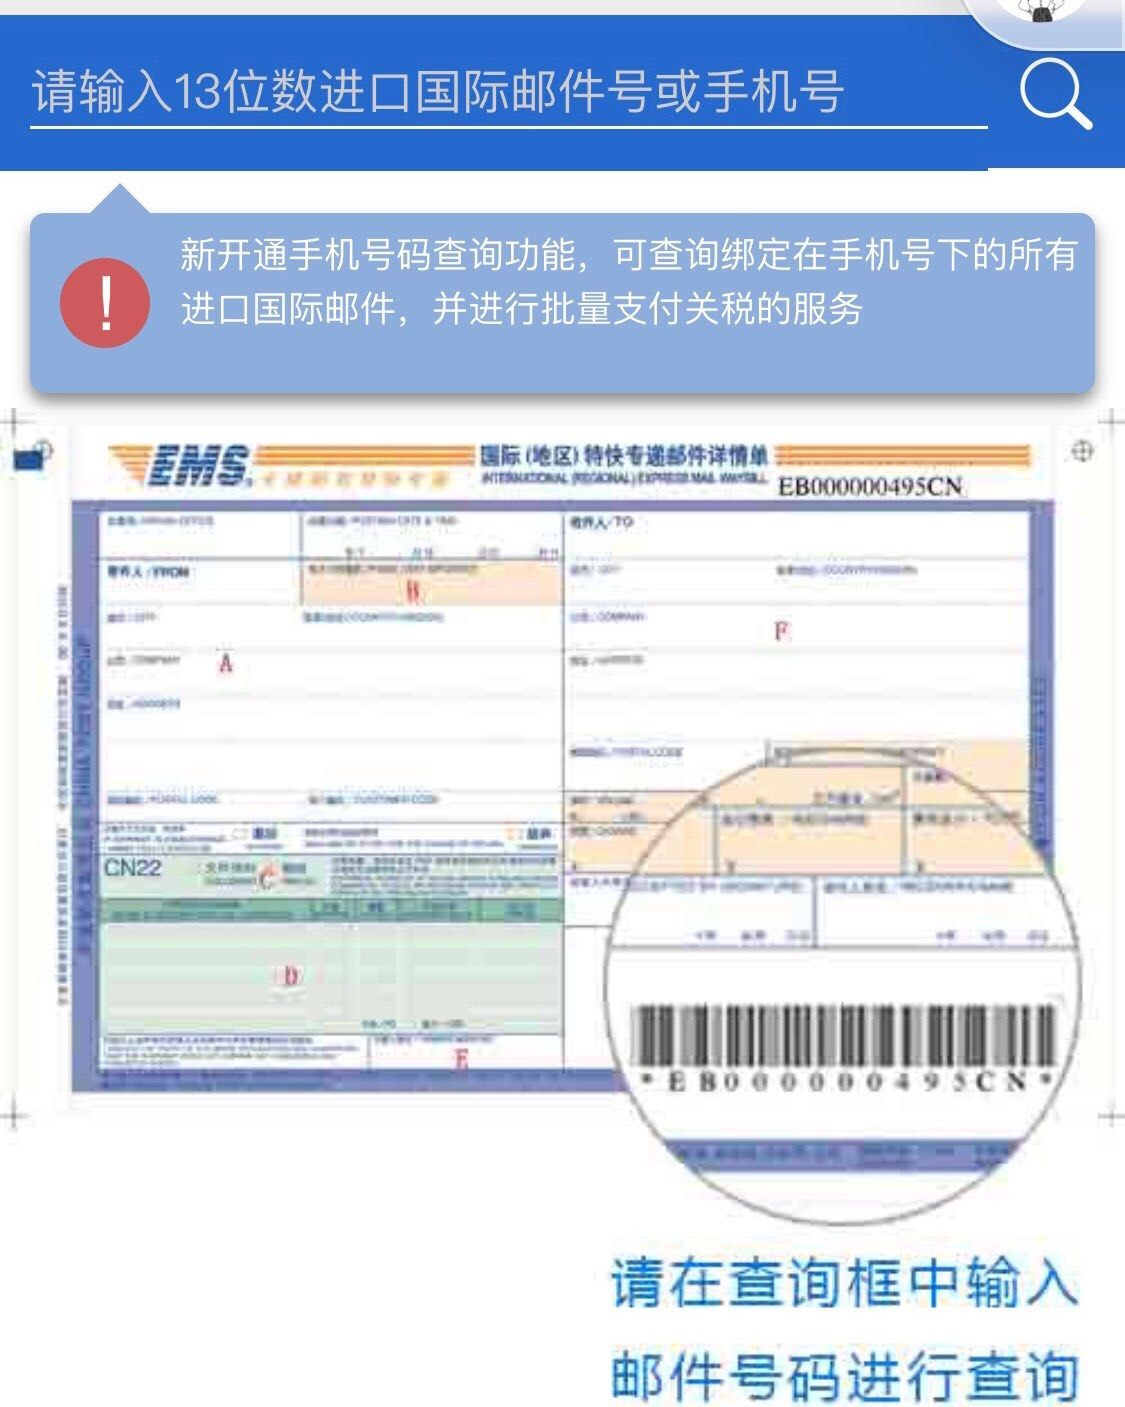 🍭我的中国银行Visa信用卡省钱计划🍭 #NO.2 直邮